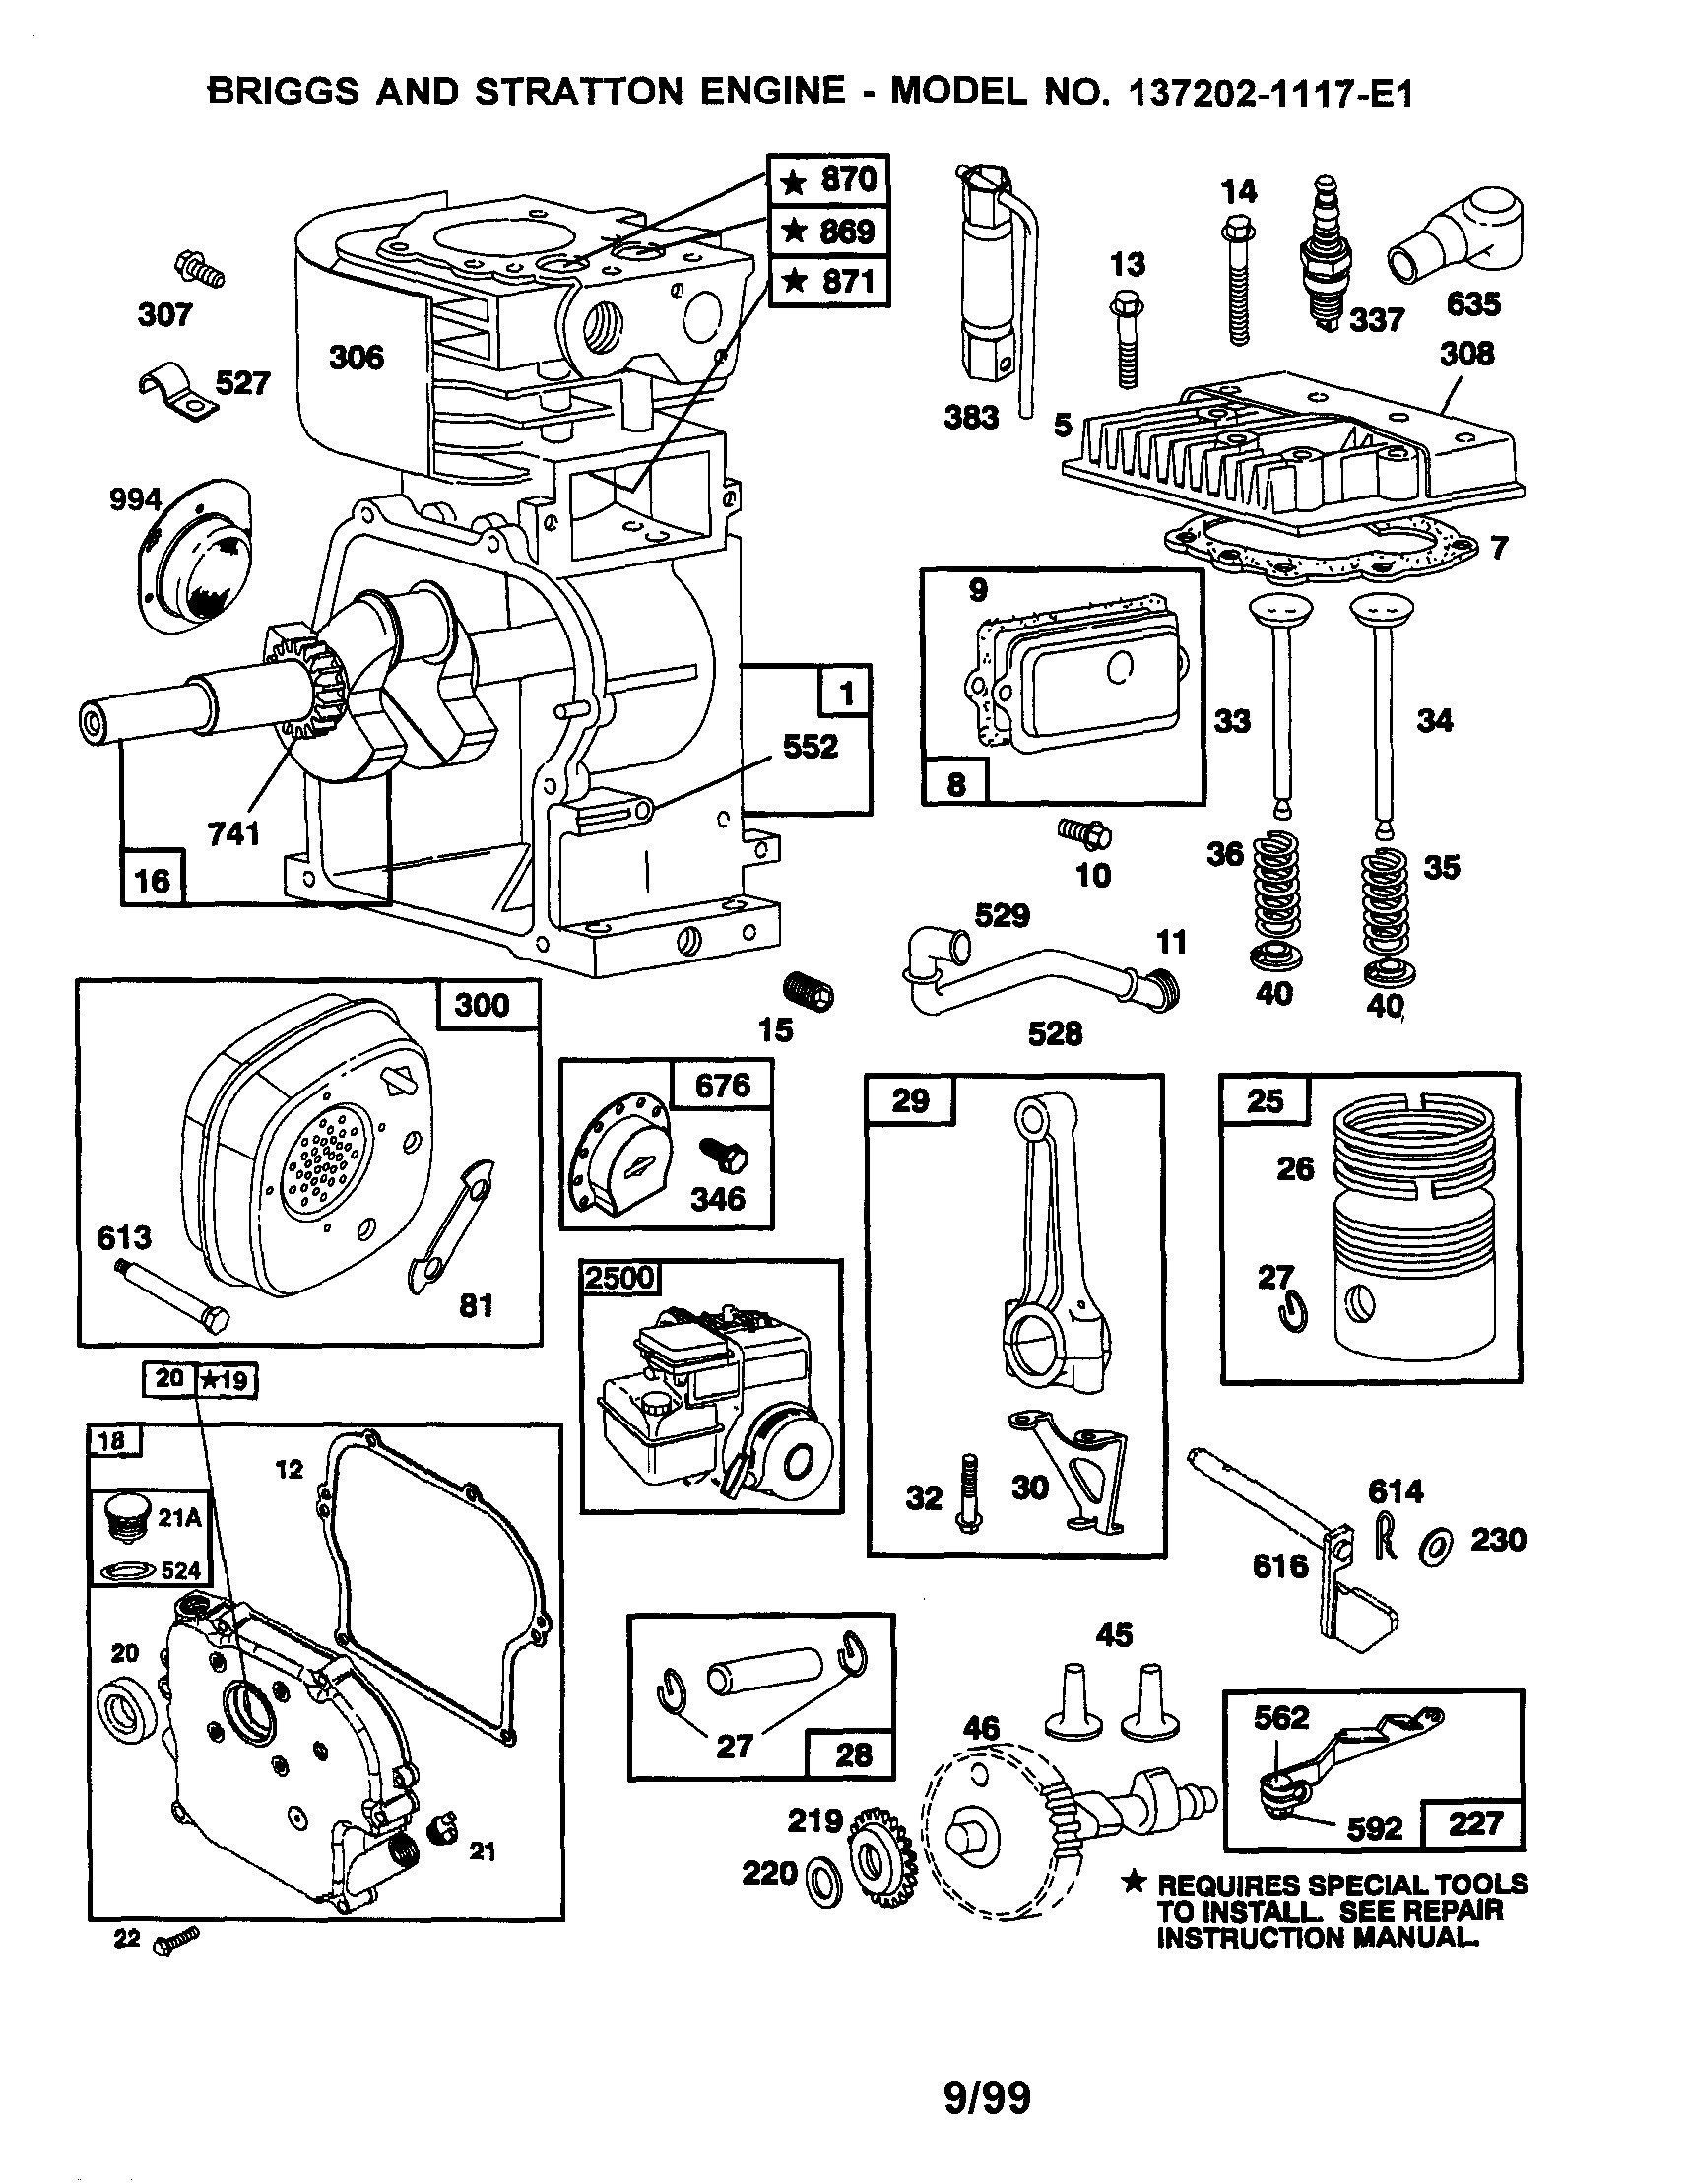 Briggs Engine Parts Diagram Briggs Stratton Engine Parts and Diagrams 2